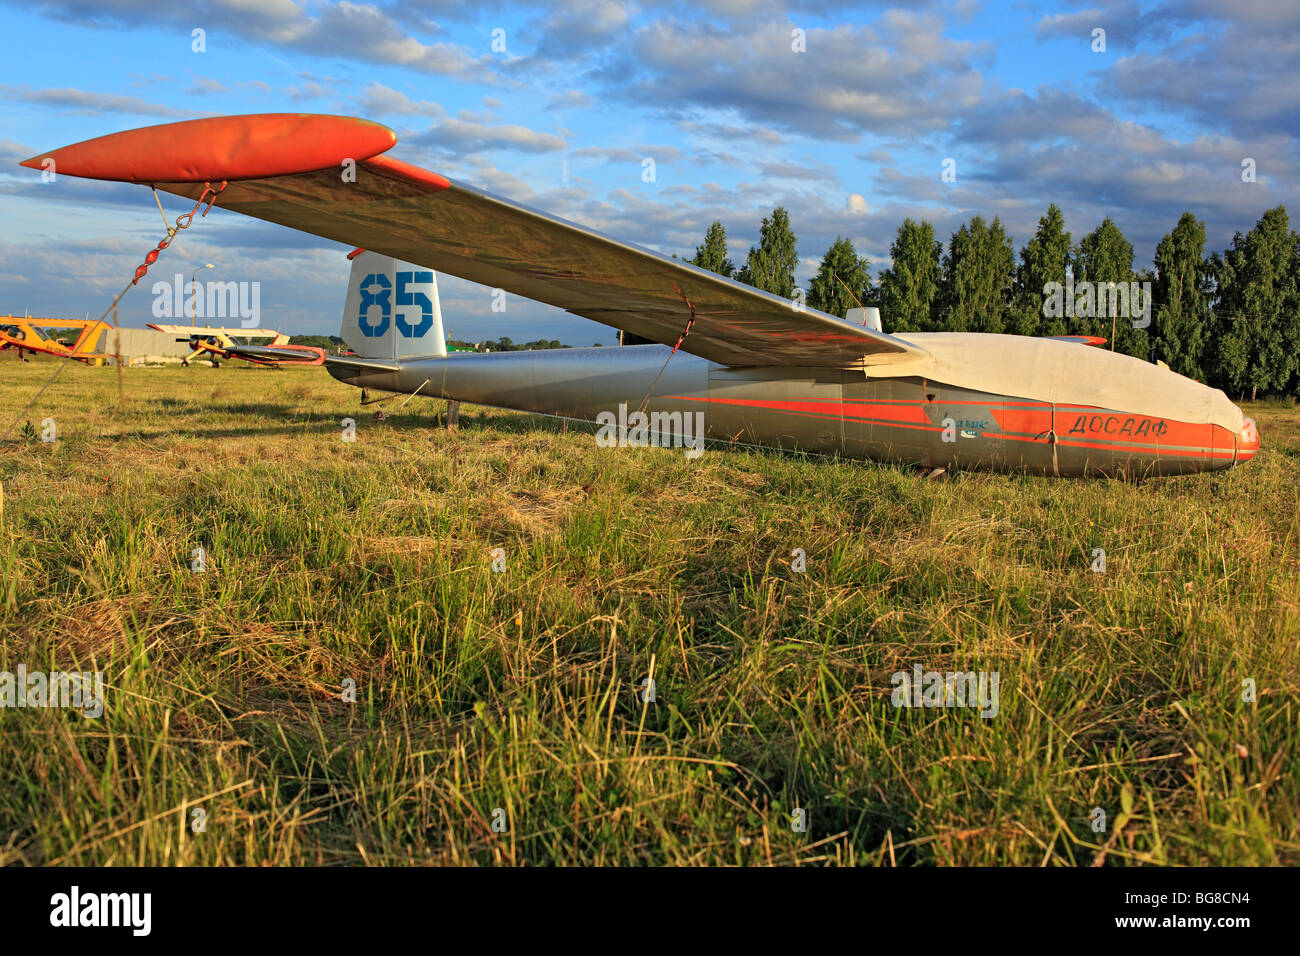 Avions avion léger parqués sur un terrain d'herbe, Russie Banque D'Images